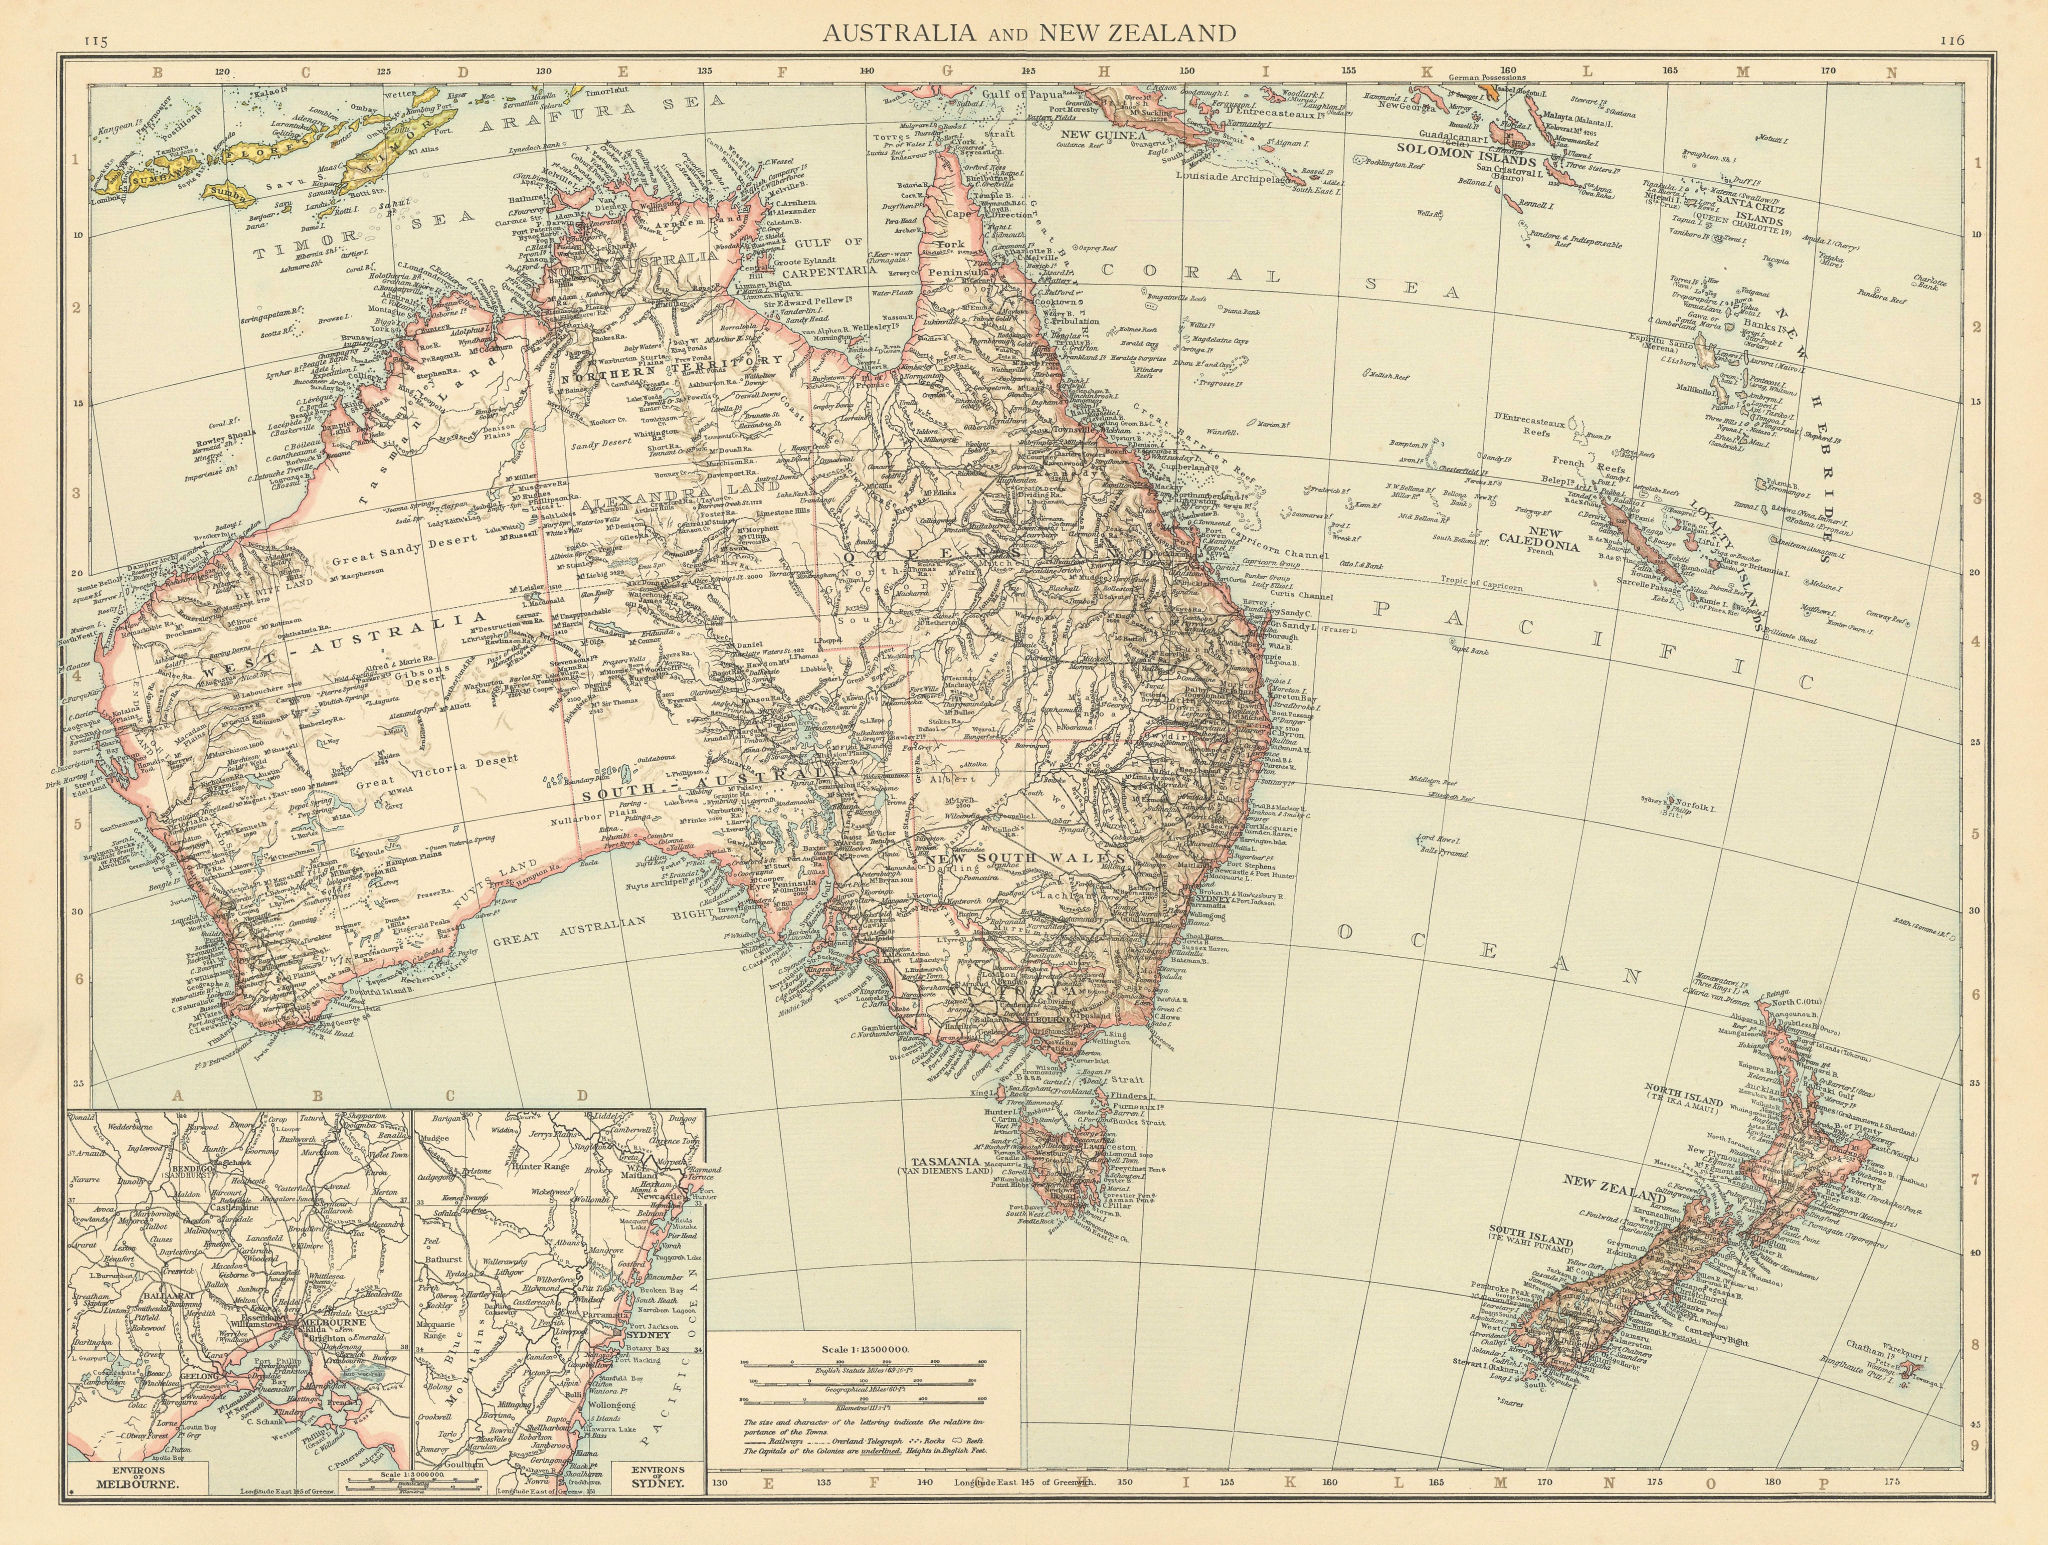 Australia & New Zealand. Australasia Melanesia New Caledonia. THE TIMES 1895 map